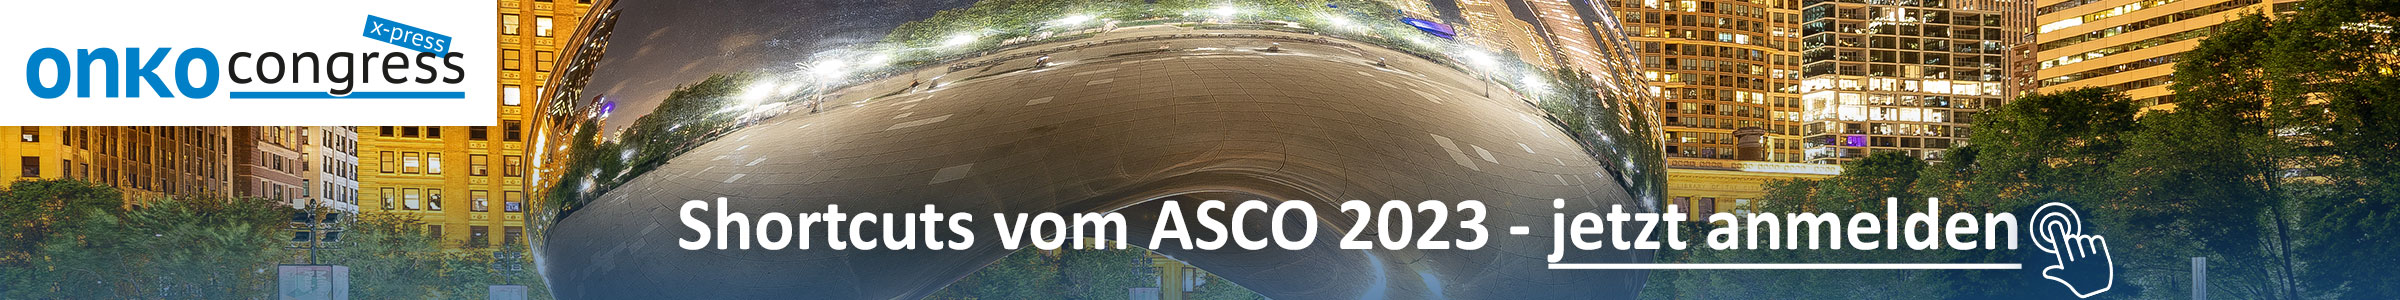 ASCO Onko CXP 2023 – vor Kongress